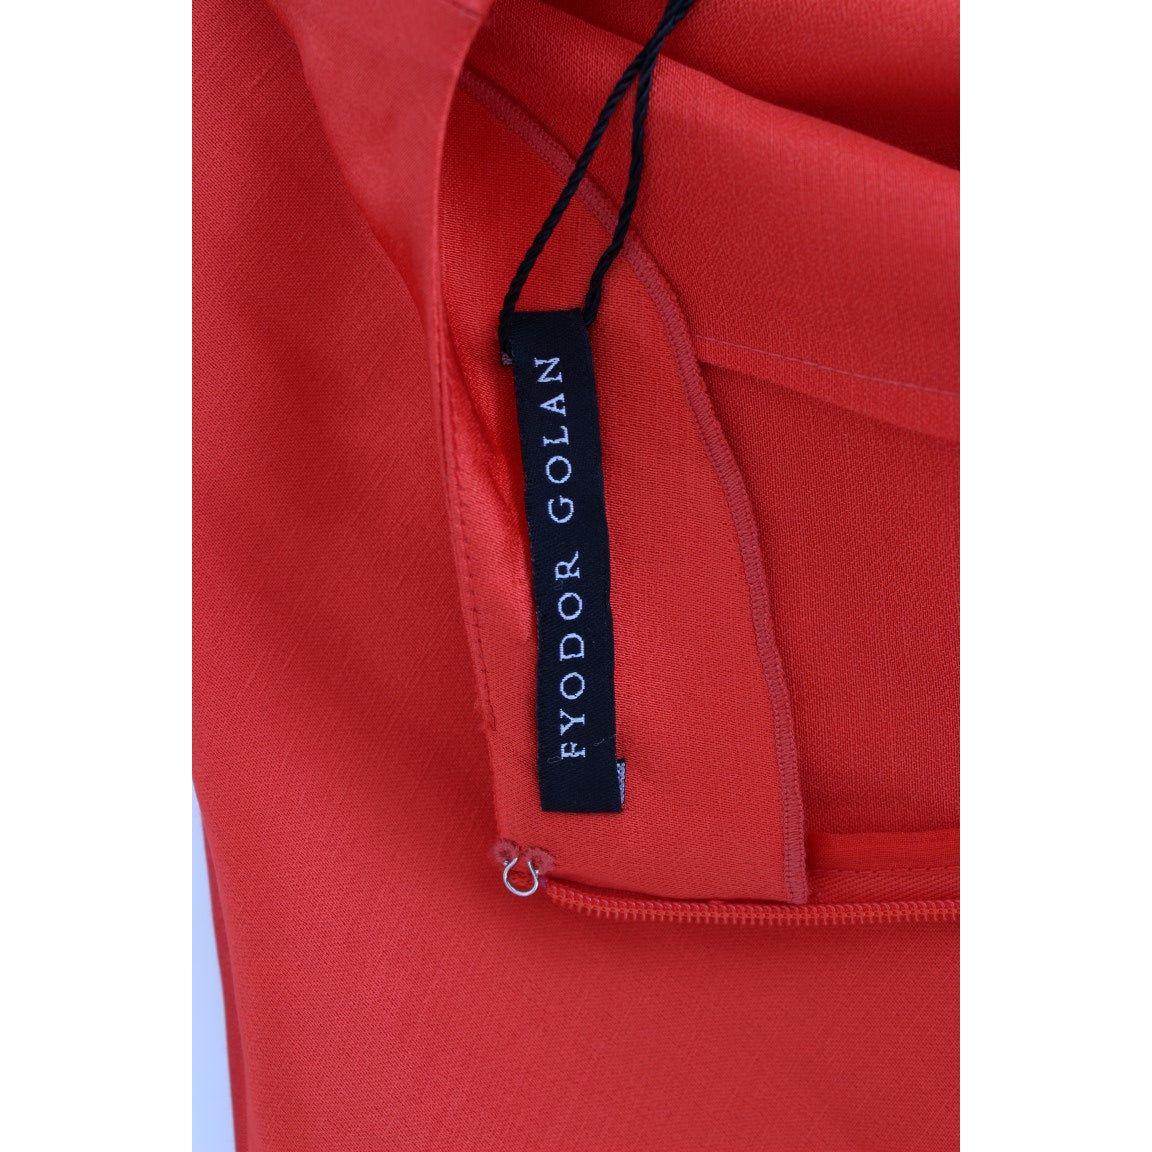 Fyodor Golan Radiant Red Linen Blend Artisan Dress red-mini-linen-3-4-sleeve-sheath-dress 185328-red-mini-linen-34-sleeve-sheath-dress-6.jpg